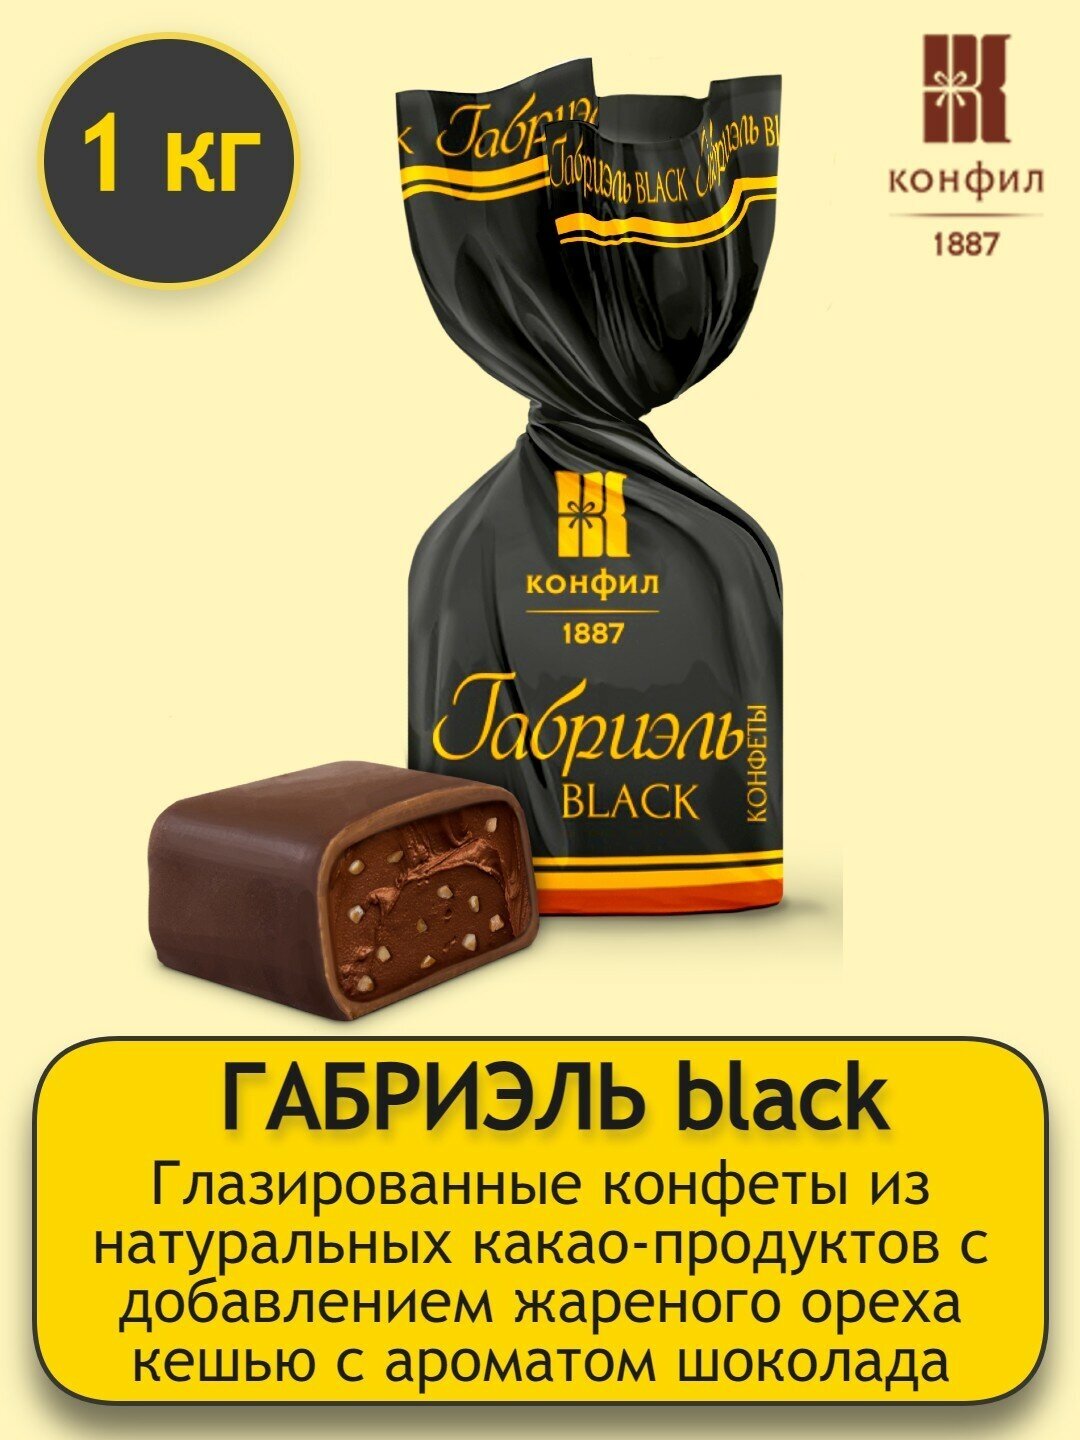 Конфеты Конфил глазированные Габриэль black из натуральных какао-продуктов весовые - 1 кг - фотография № 2